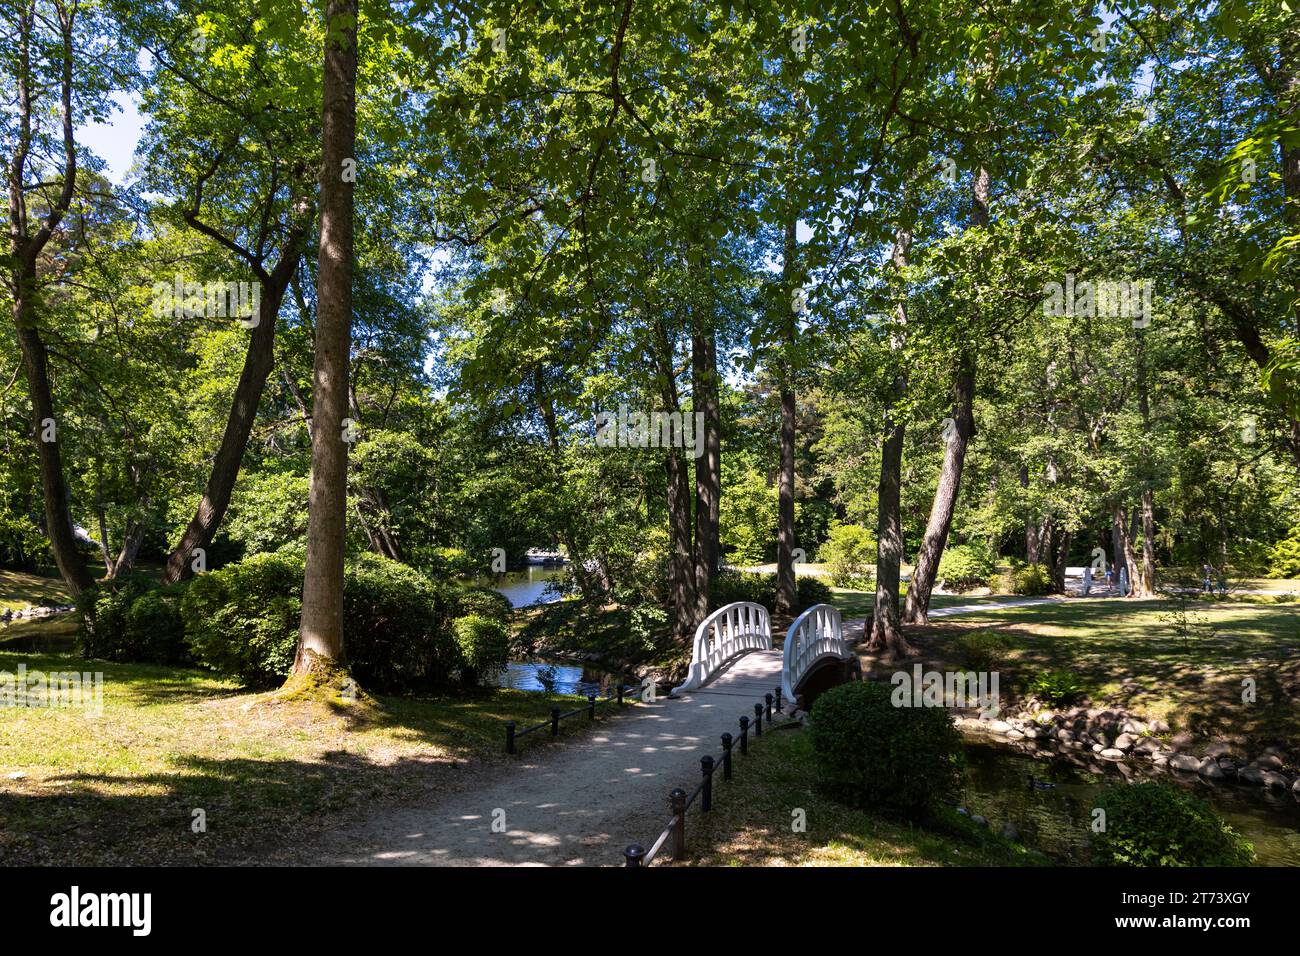 Un piccolo ponte romantico in un parco cittadino in legno, dipinto di bianco. Parcheggia in piena luce naturale, in una soleggiata giornata estiva. Foto Stock